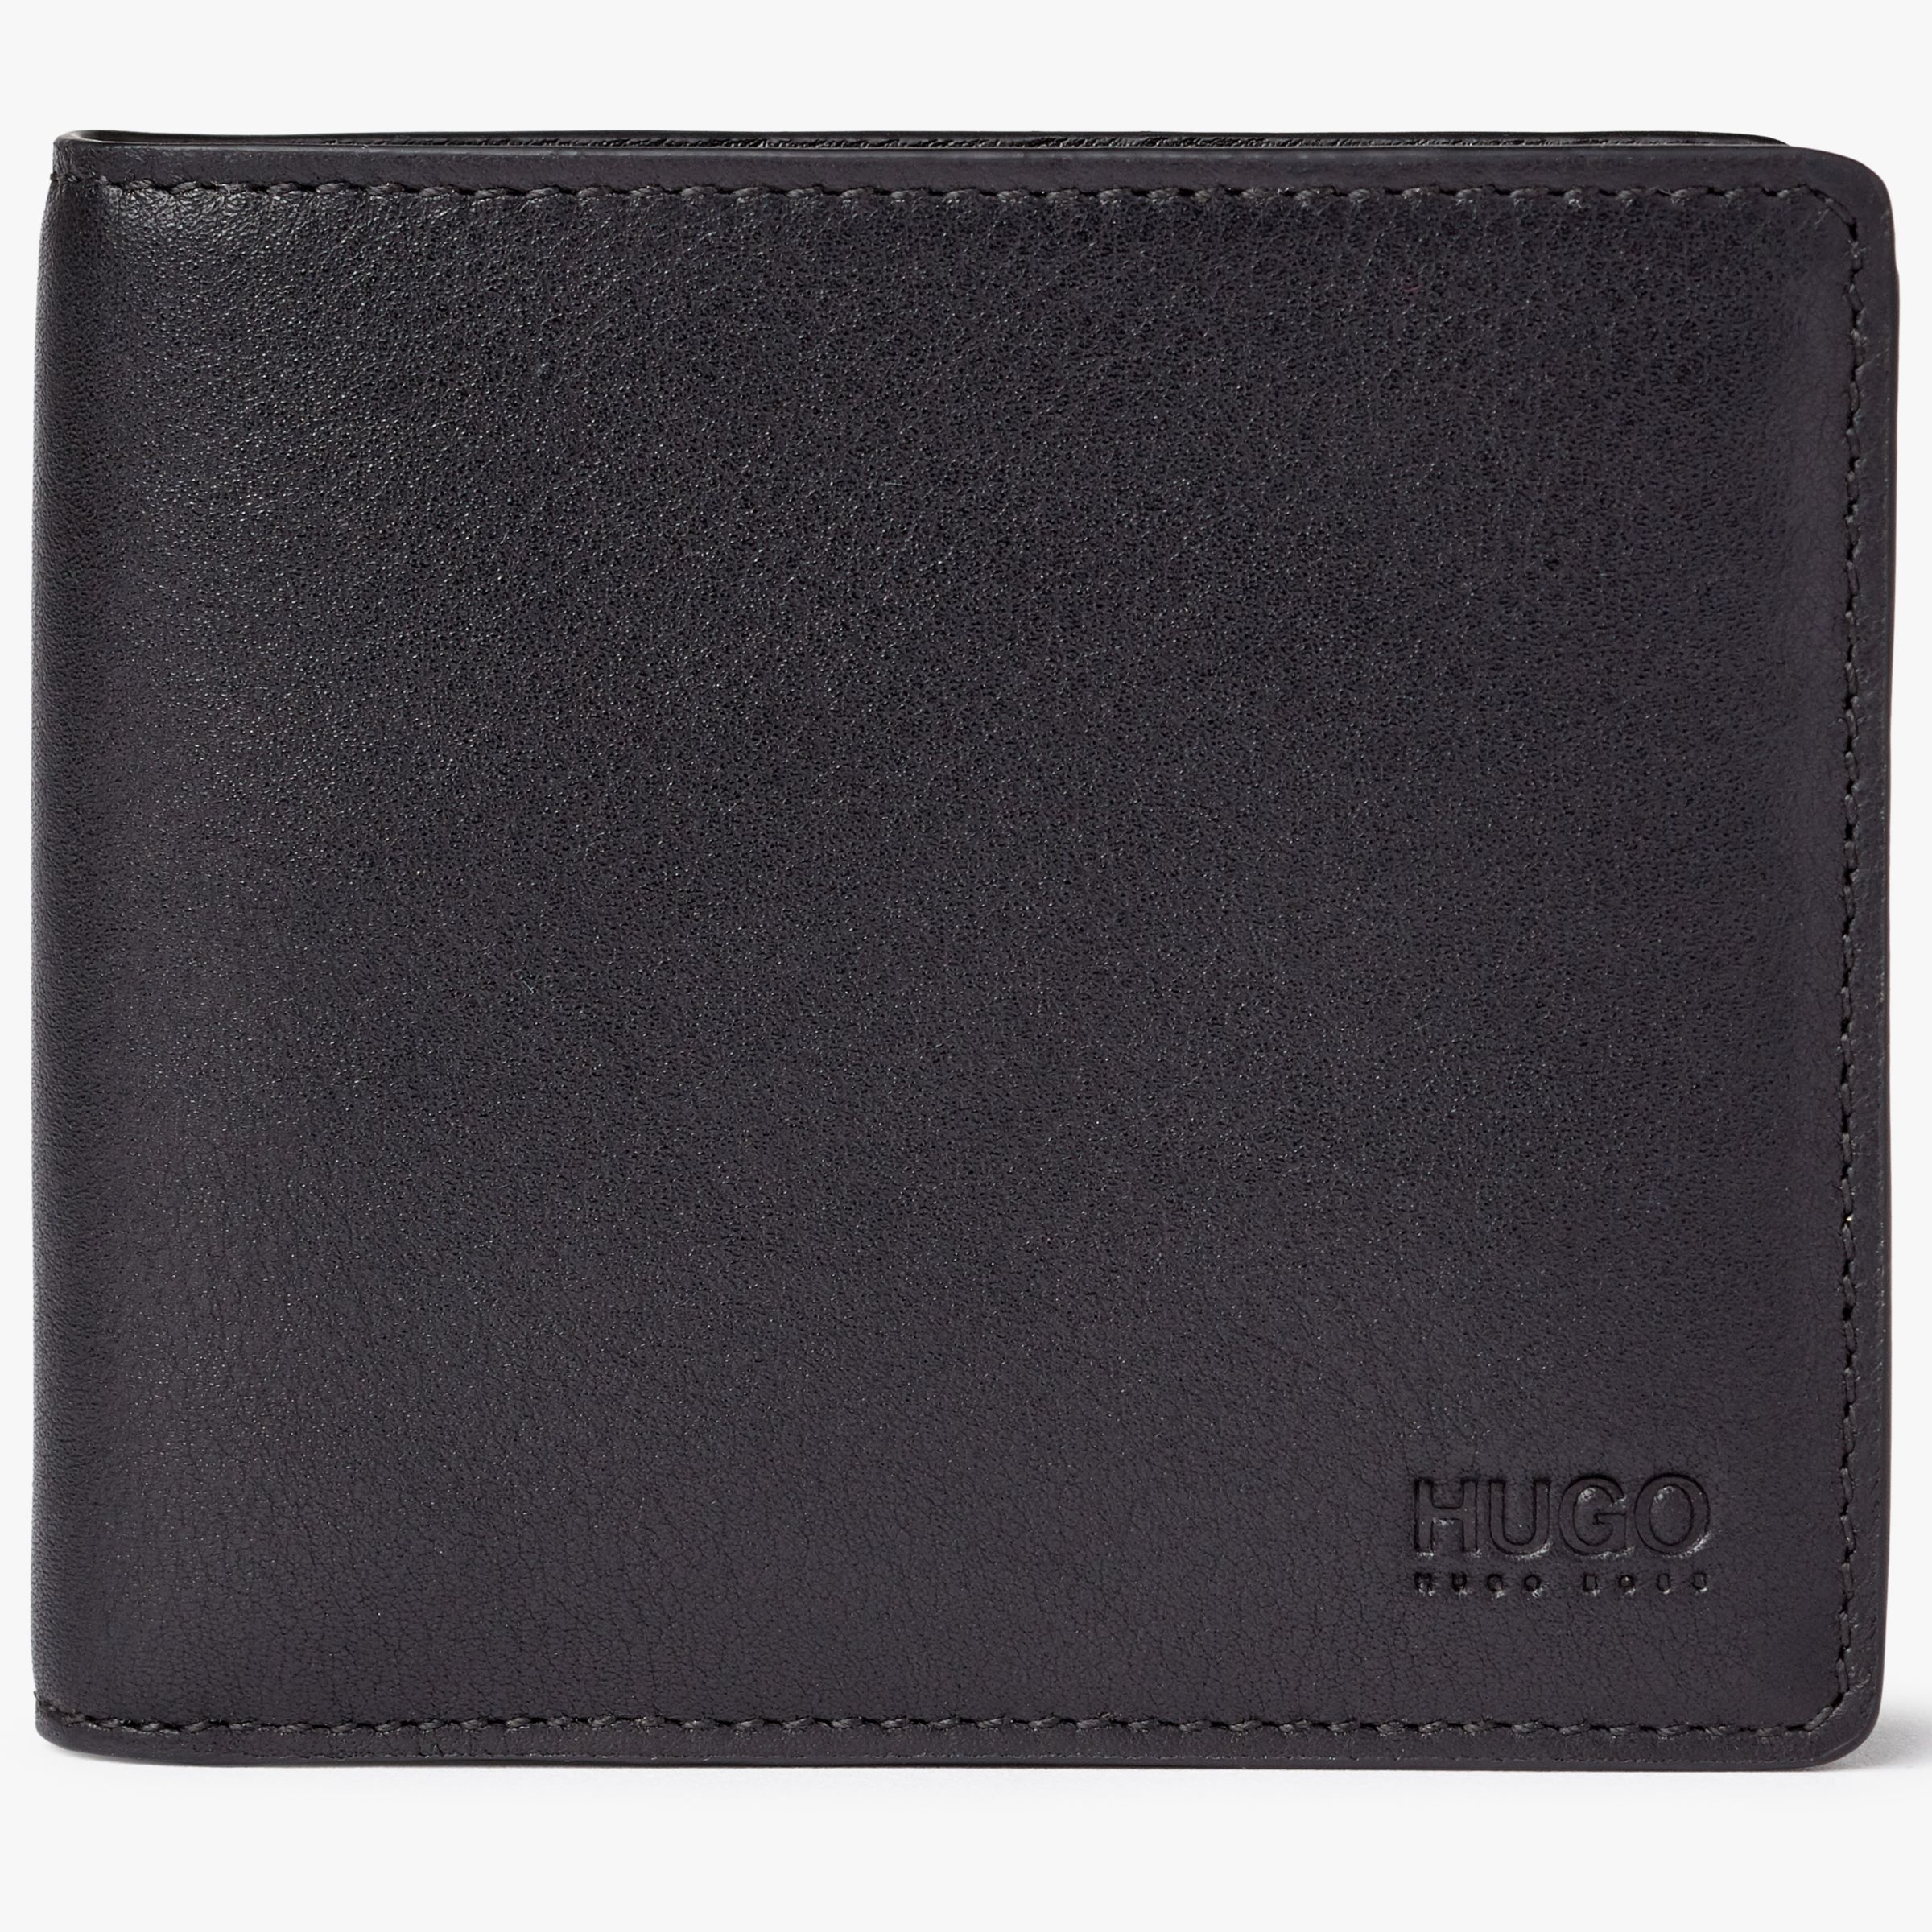 hugo boss wallet